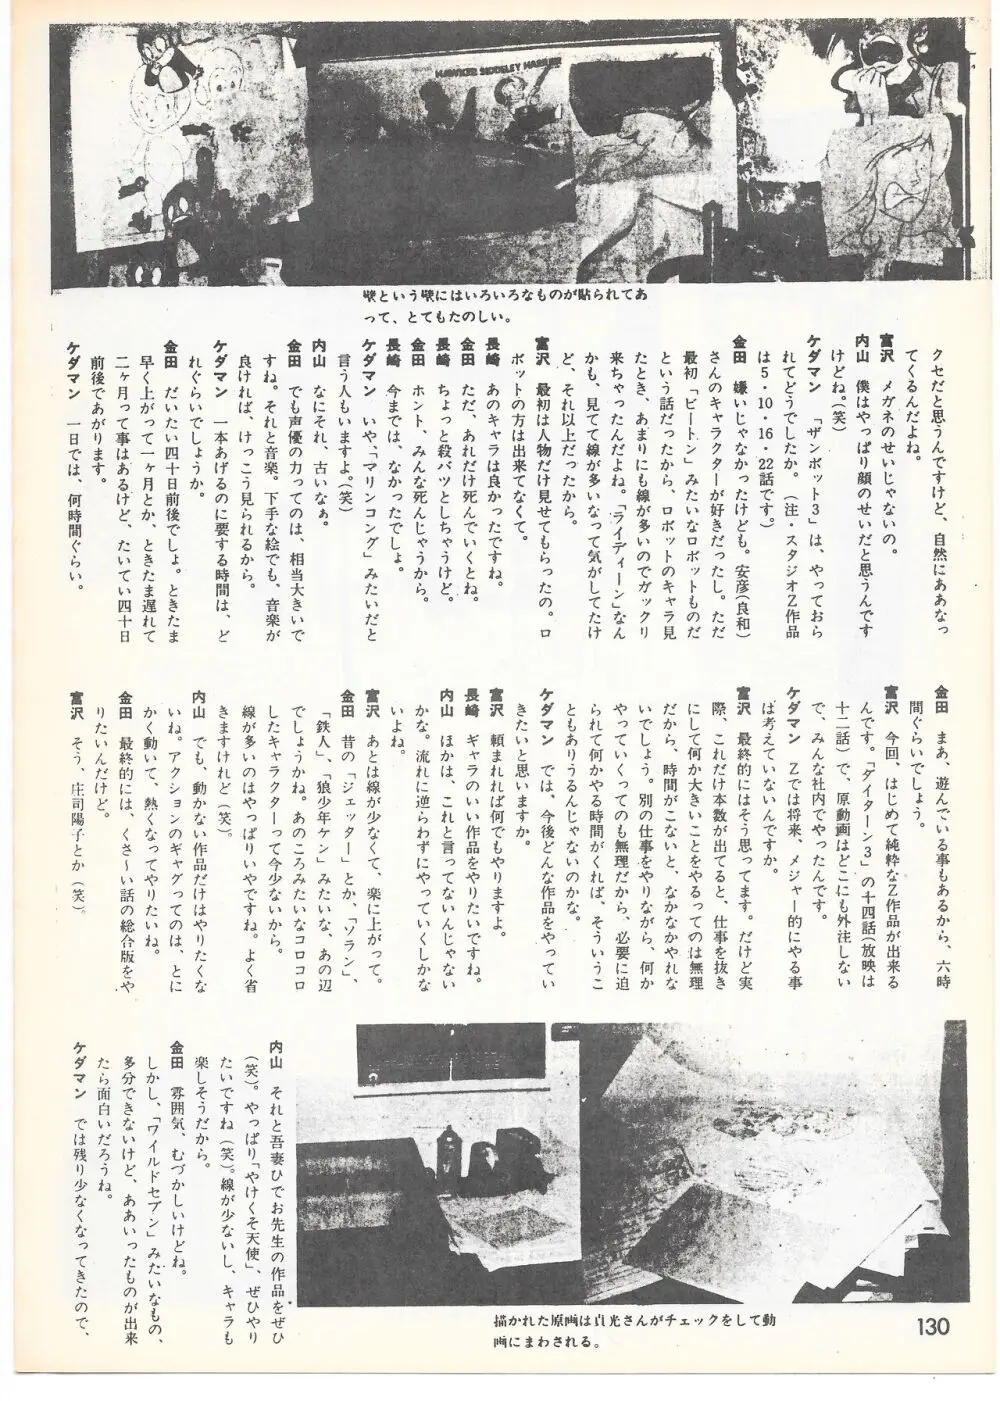 THE ANIMATOR 1 金田伊功特集号 125ページ